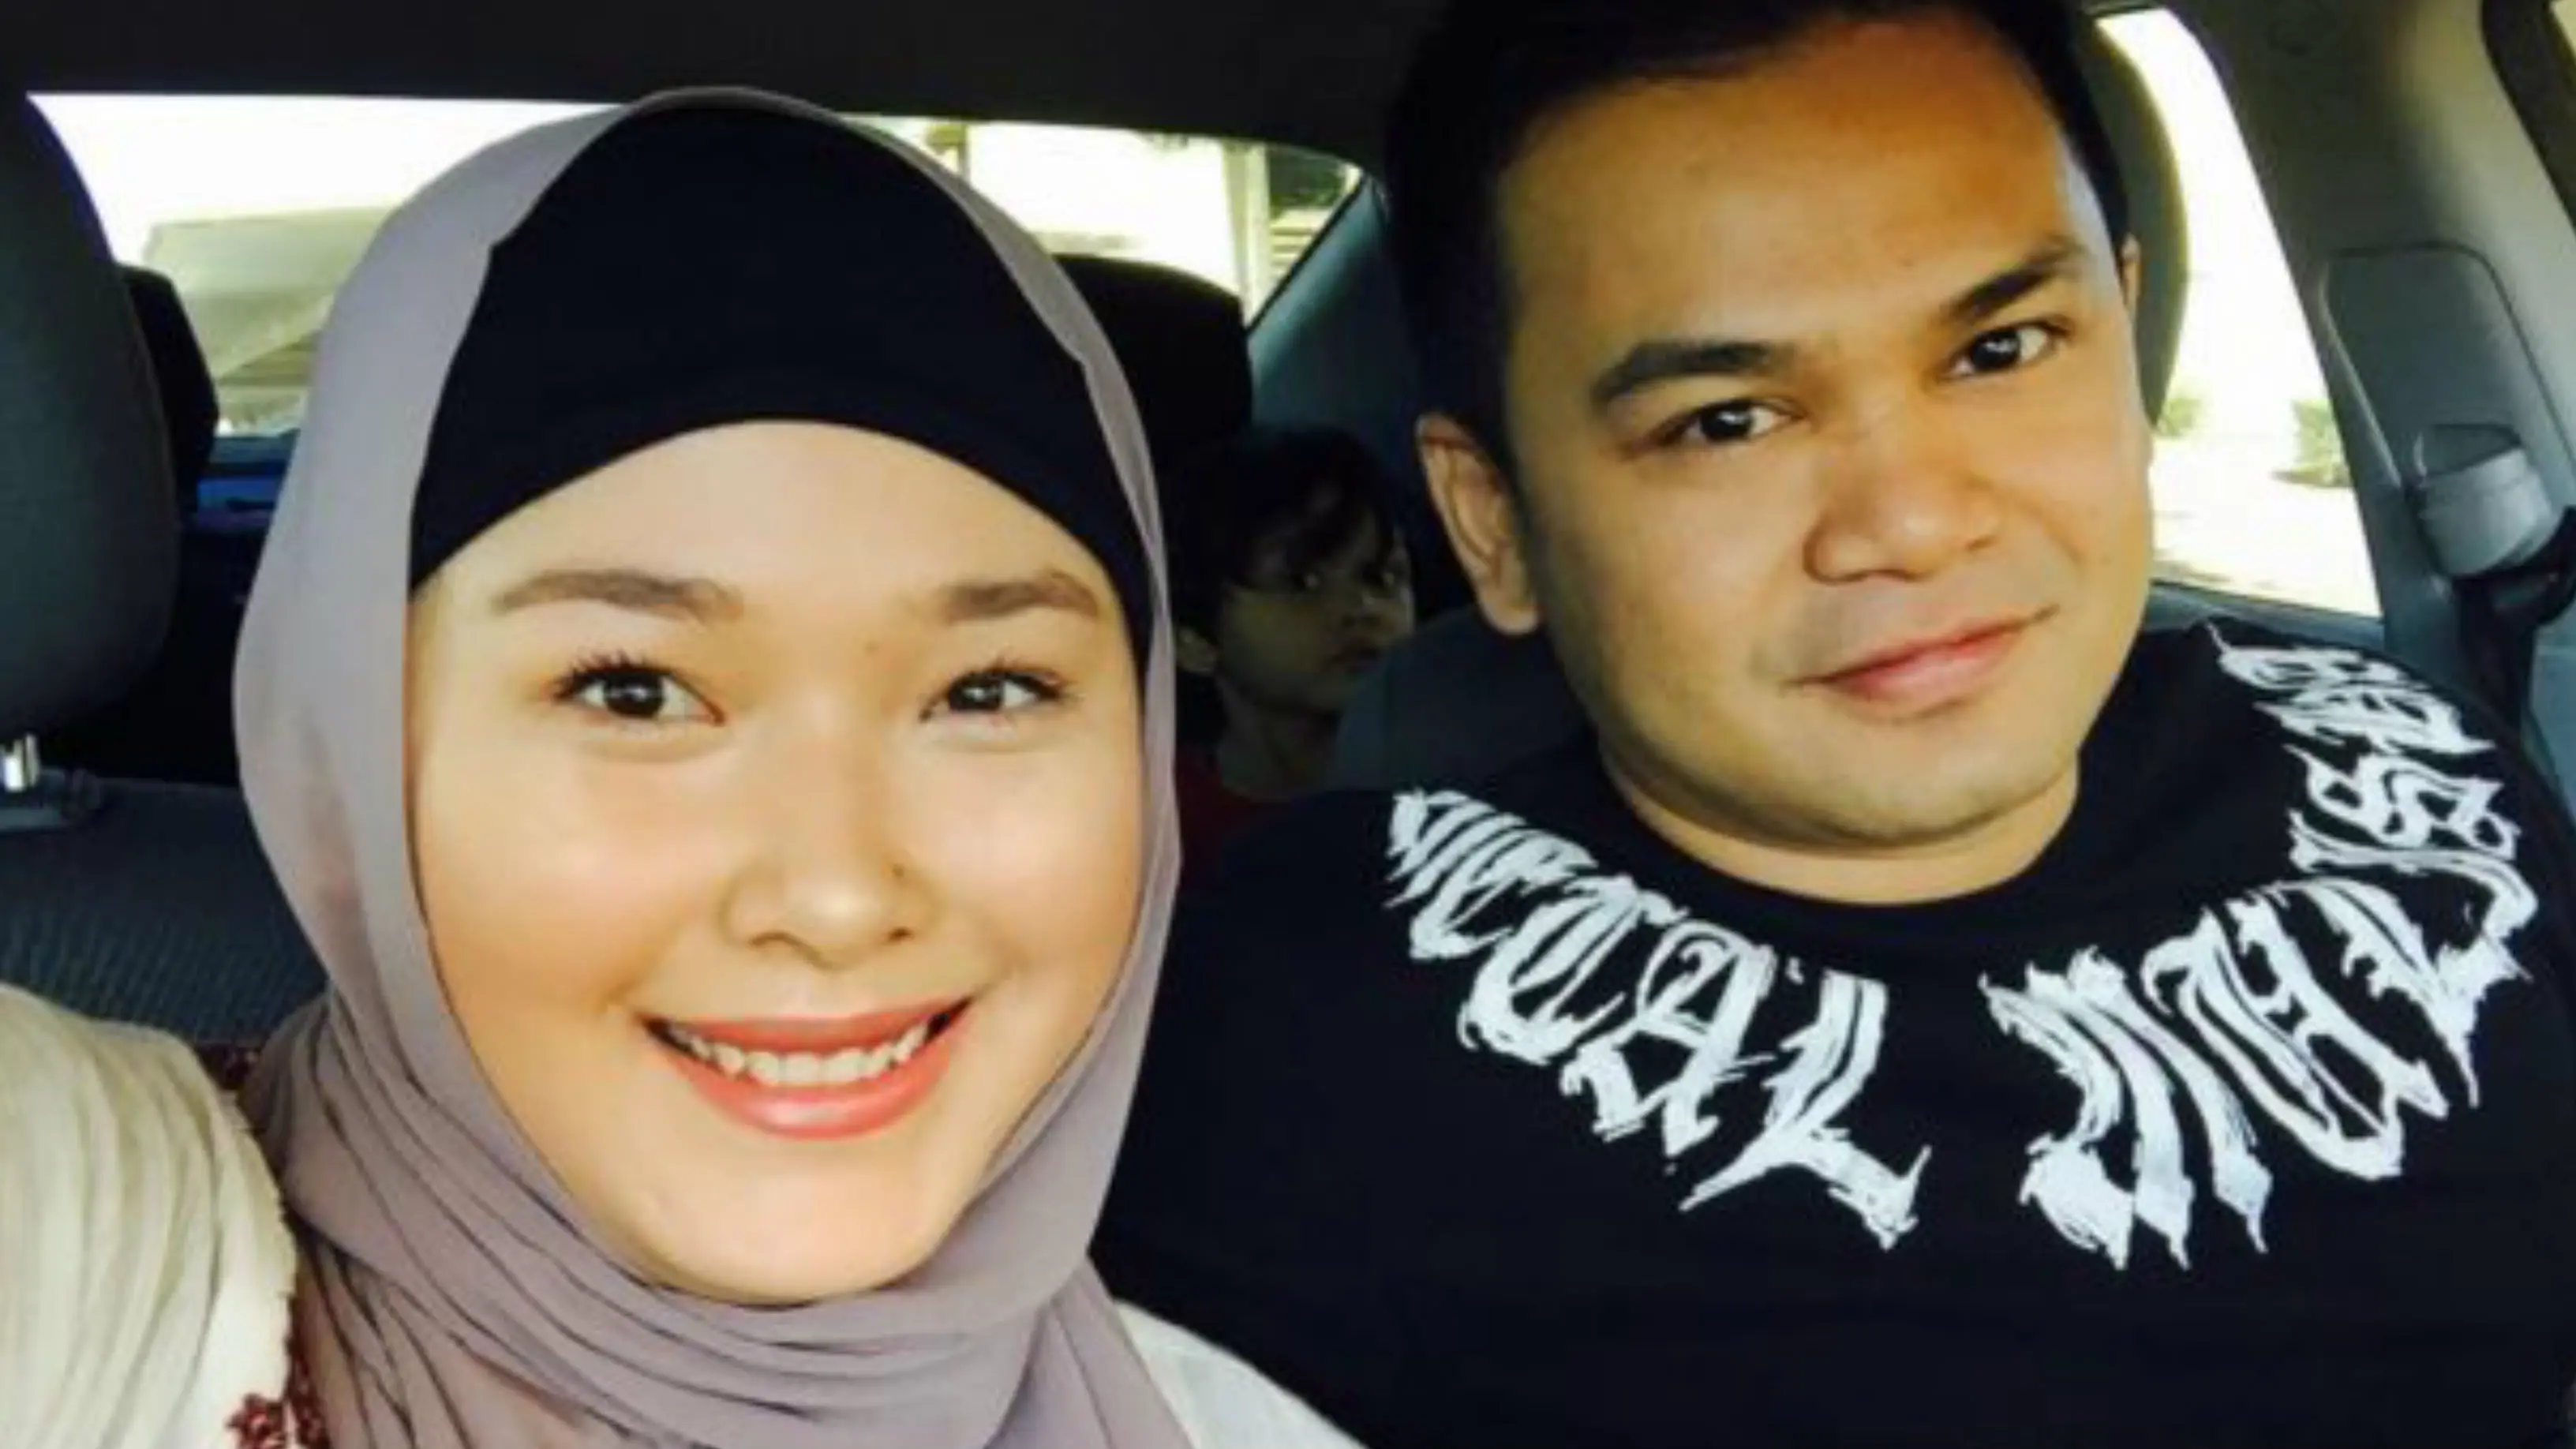 Melwanche Arief, warga Indonesia yang menjadi saksi penembakan di Las Vegas, beserta istri. (Dokumentasi pribadi/ VOA News)